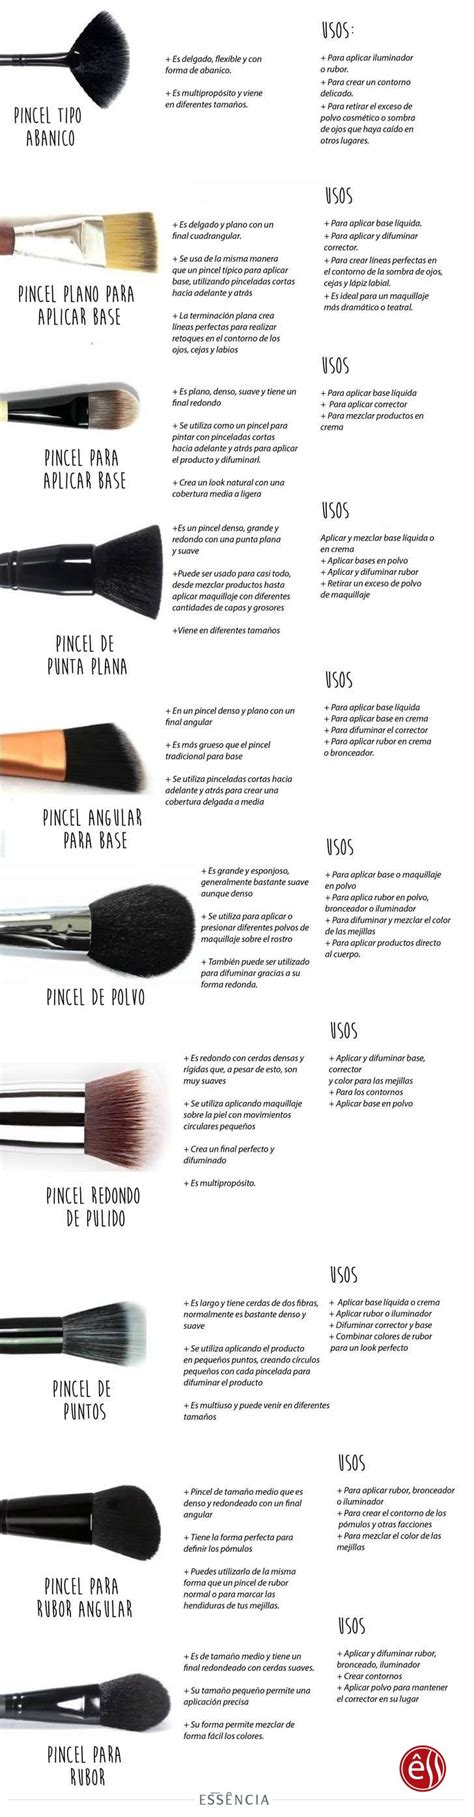 Tipos De Brochas De Maquillaje Y Sus Princilapes Usos Beauty Makeup